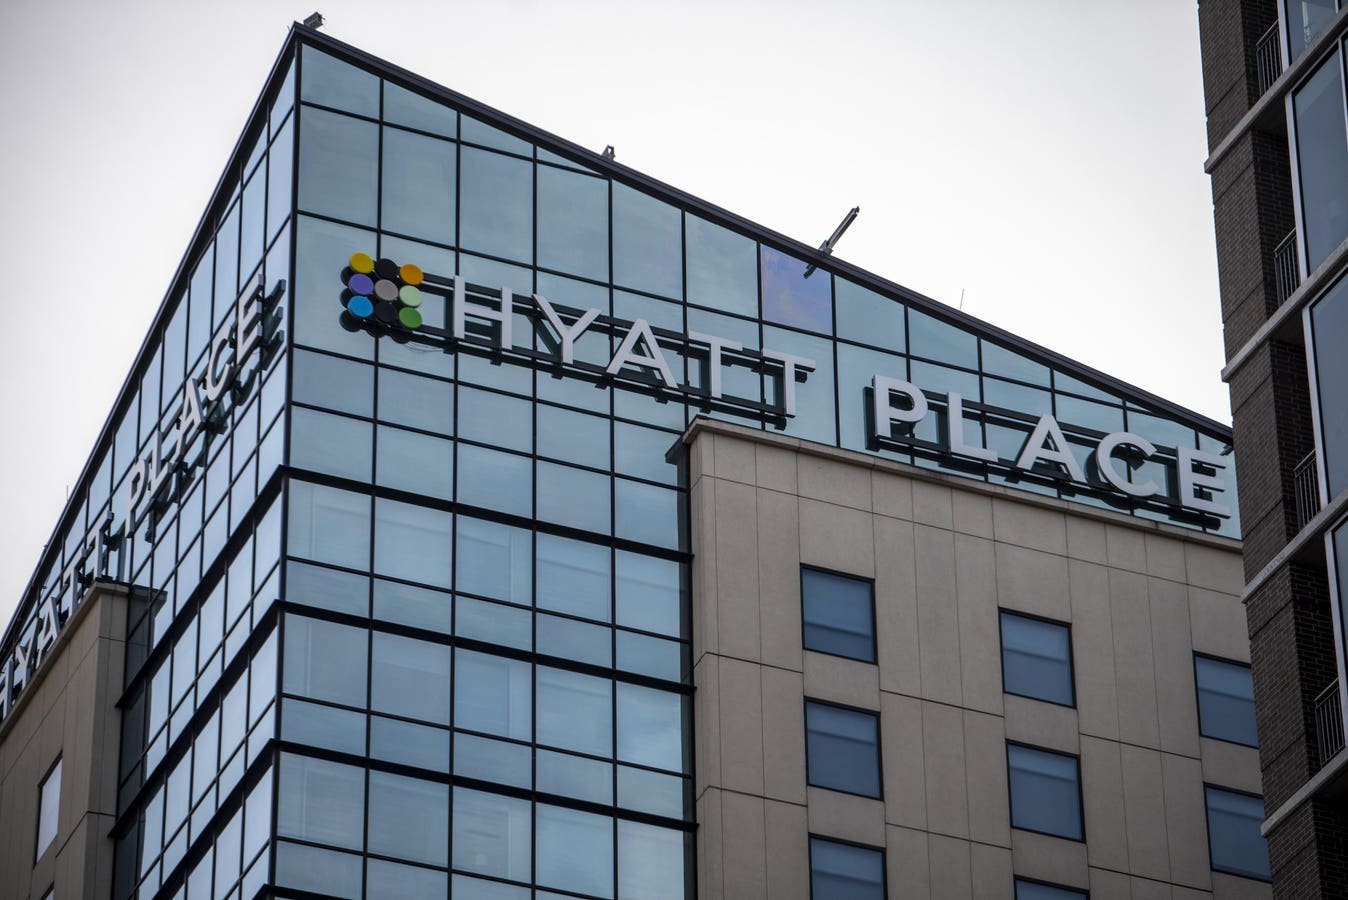 World Of Hyatt Named Best Hotel Frequent-Guest Program